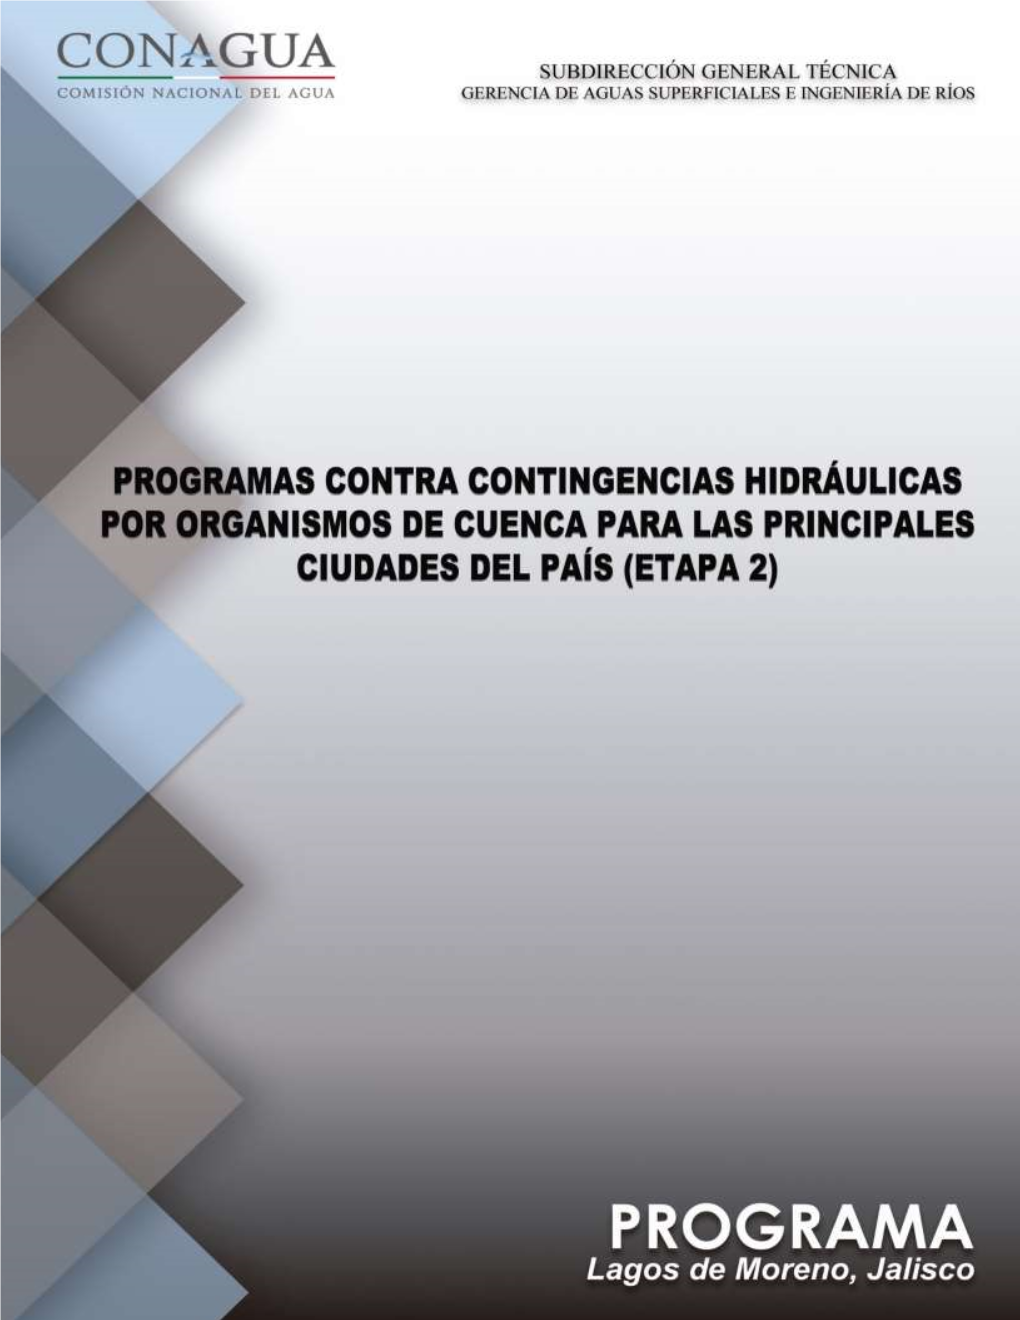 Programa Contra Contingencias Hidráulicas Para La Zona Urbana De Lagos De Moreno, Jalisco